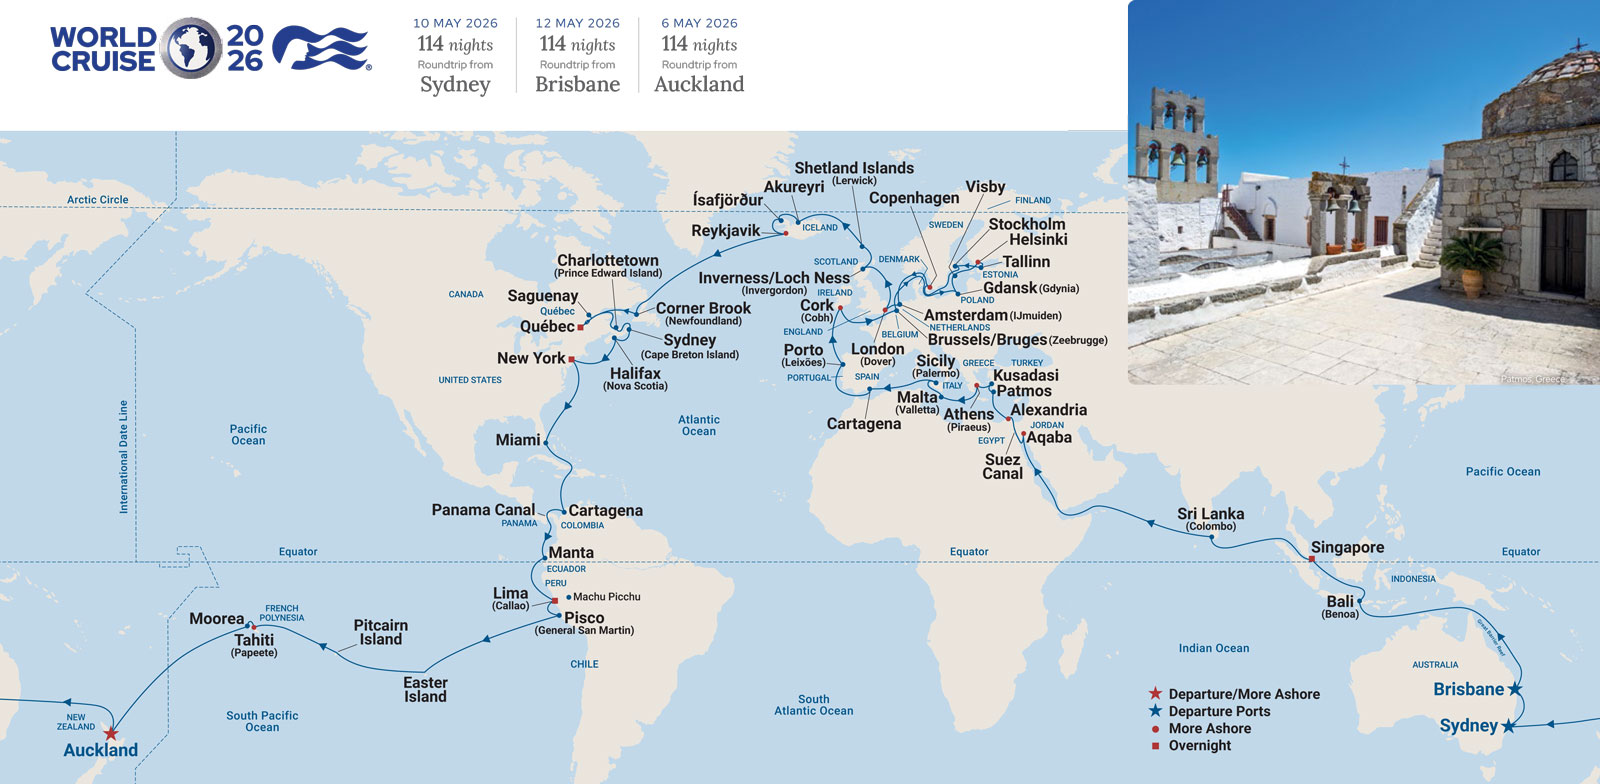 Princess World Cruise 2026 Map